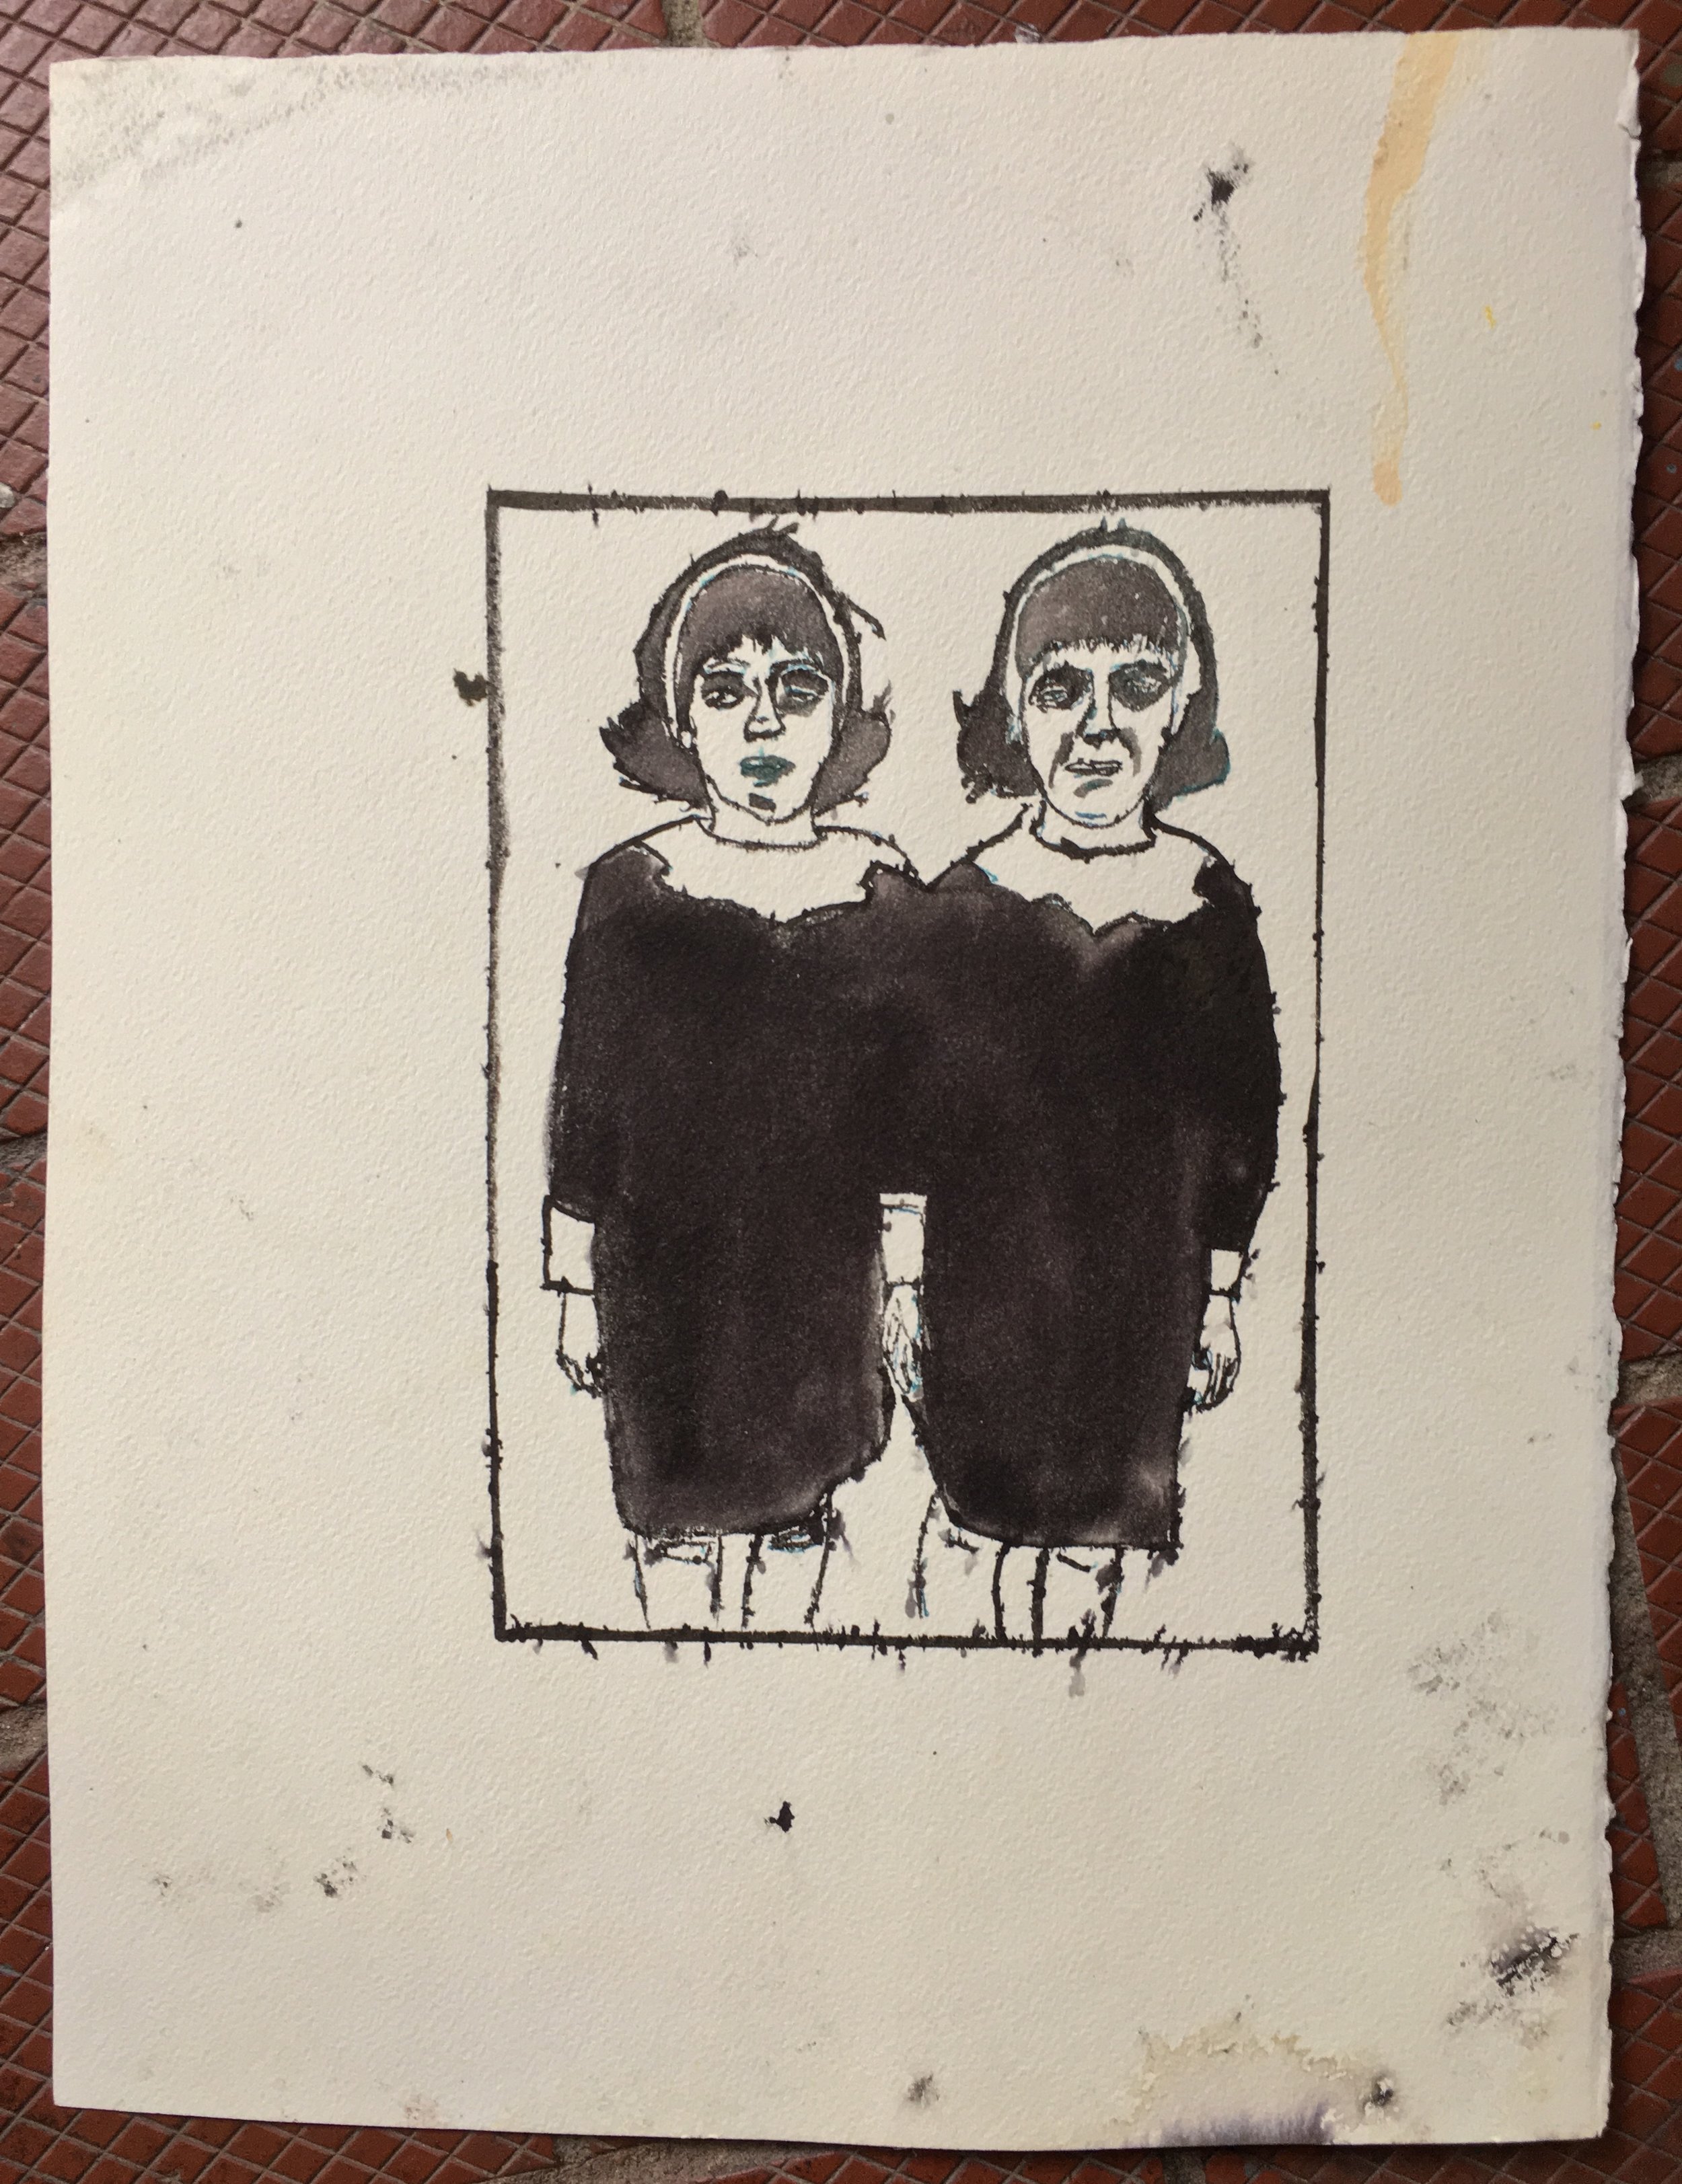 Diane+Arbus+Twins+14.75x11+Ink.jpg